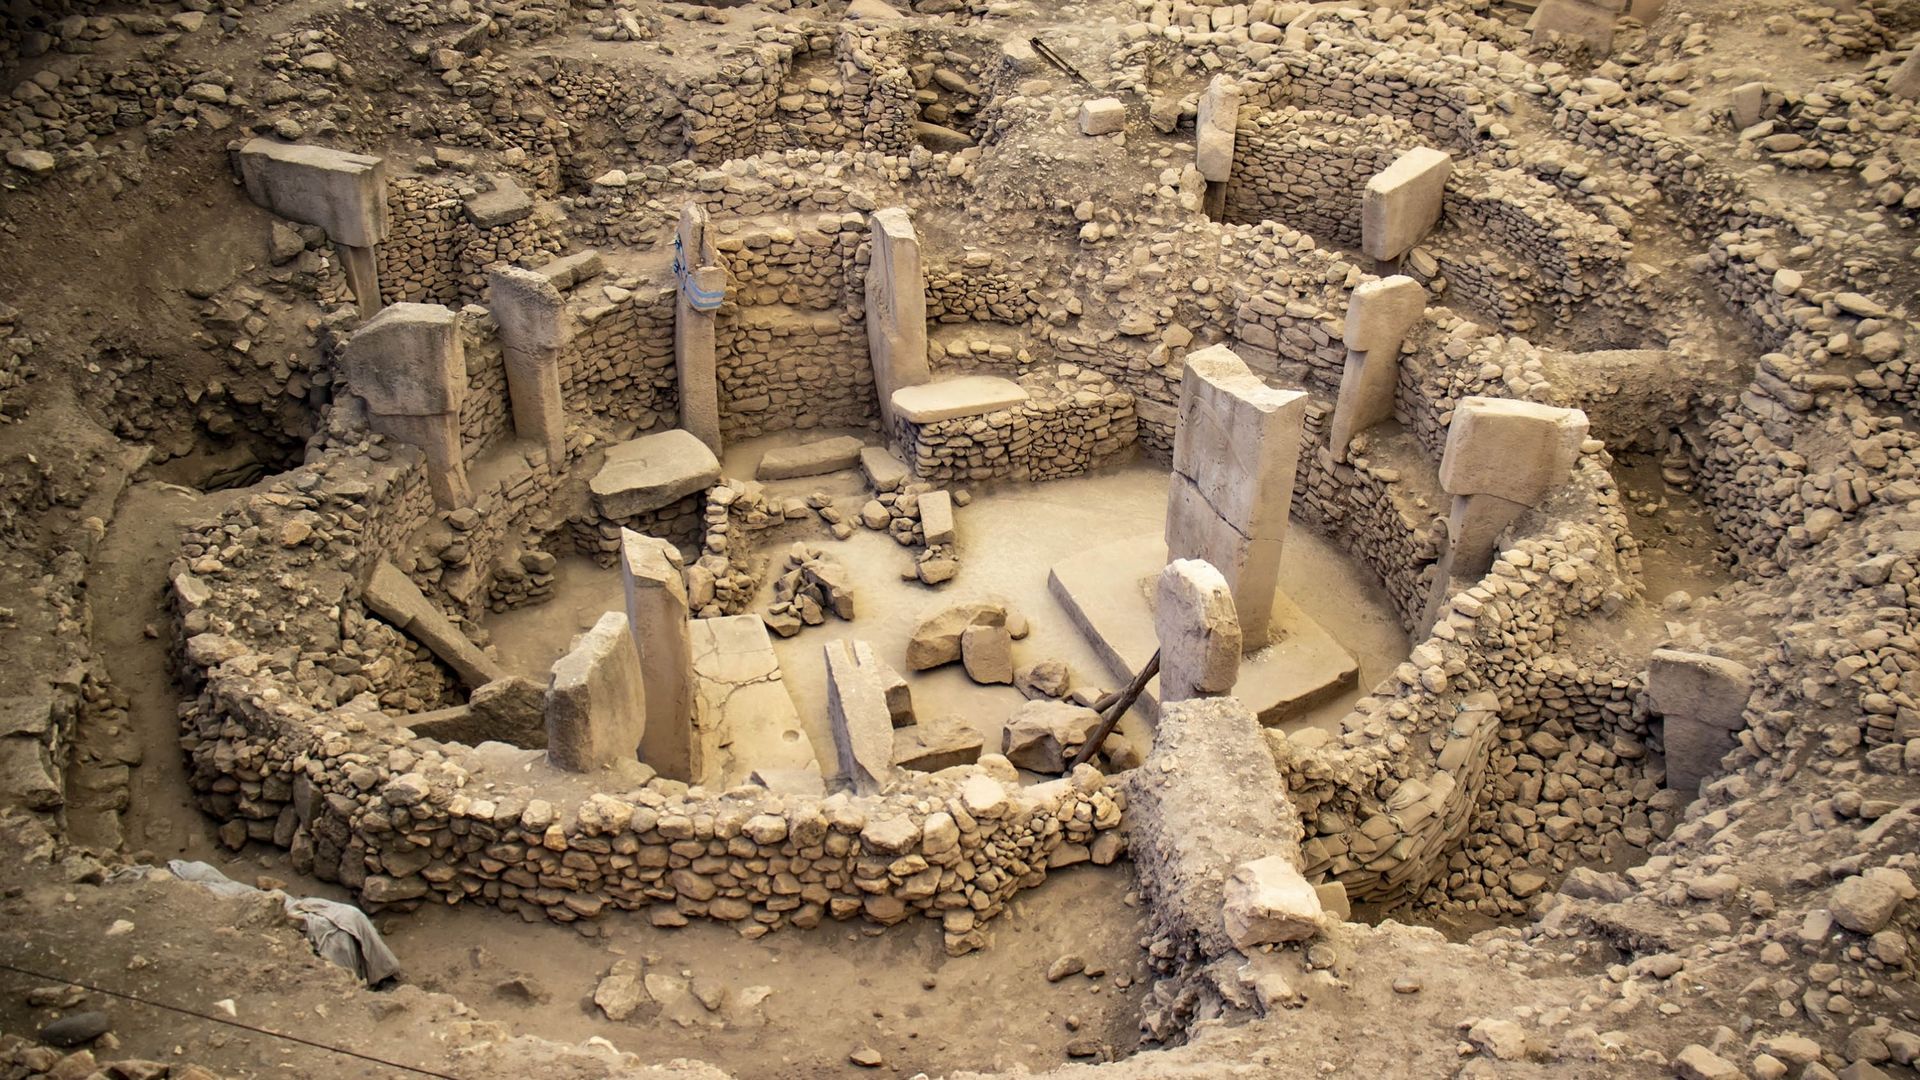 La crise climatique détruit des sites archéologiques, avant que nous puissions les étudier.